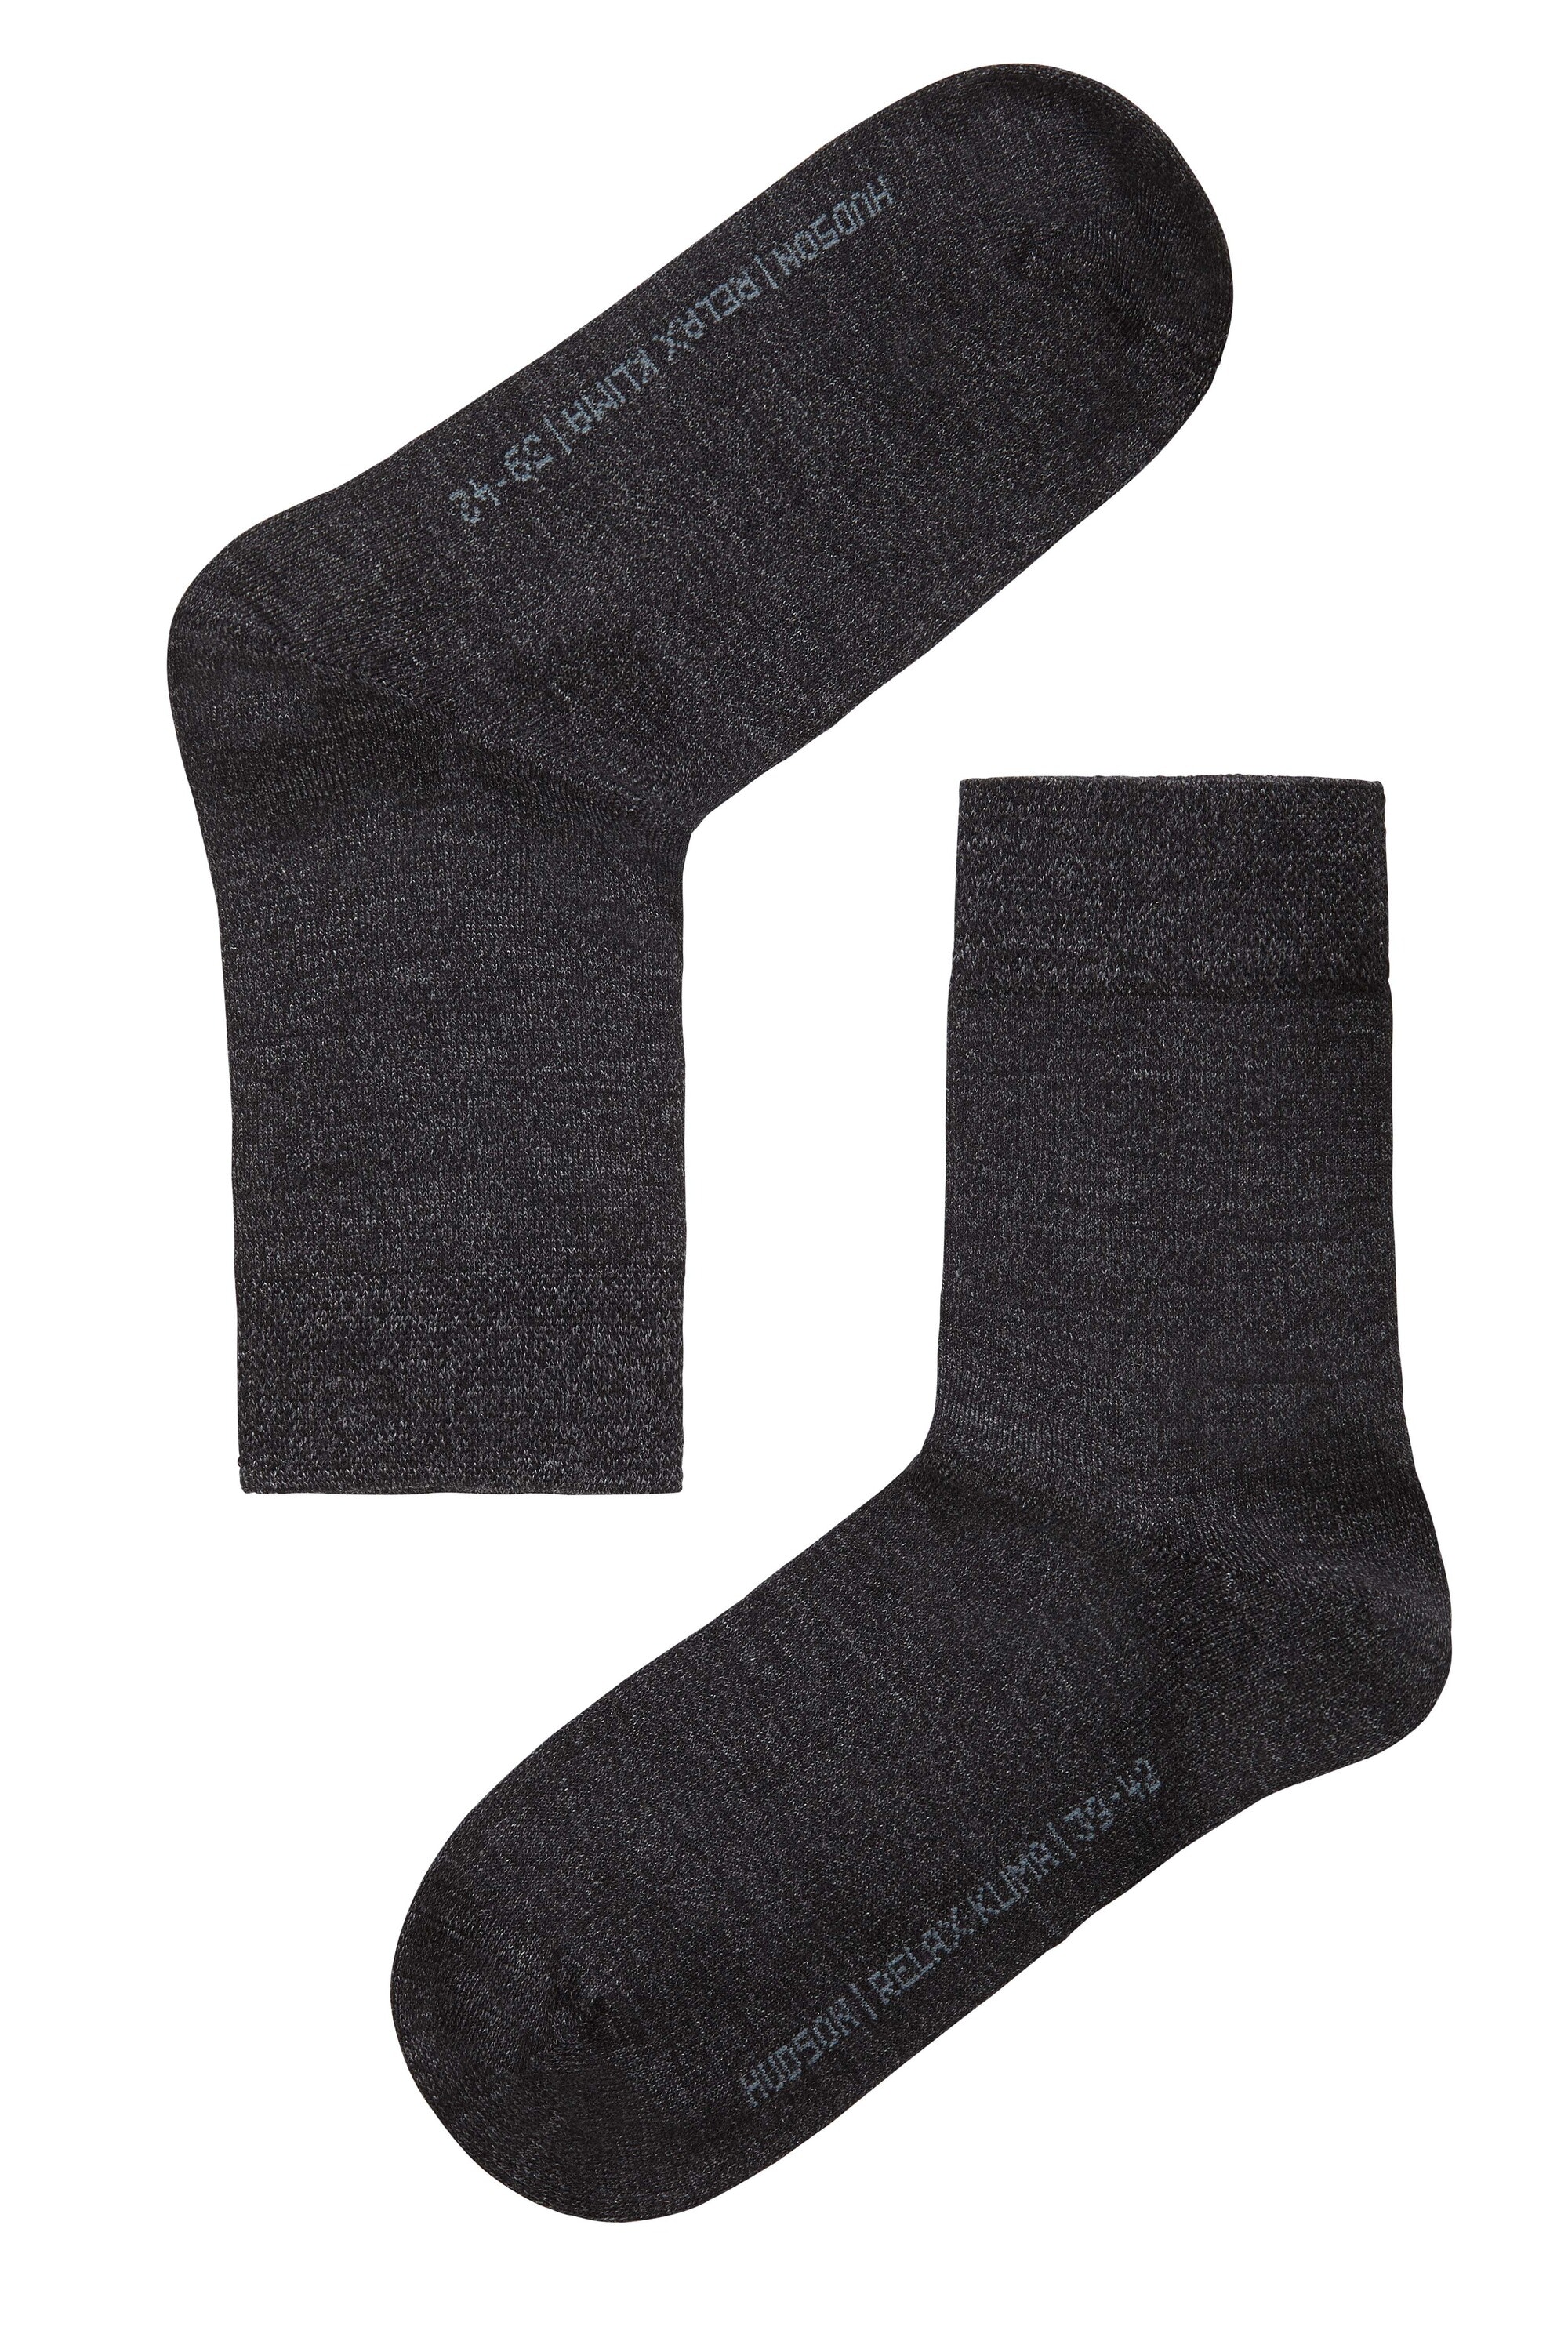 Damen-Socke "Relax Woolmix" ohne Gummidruck